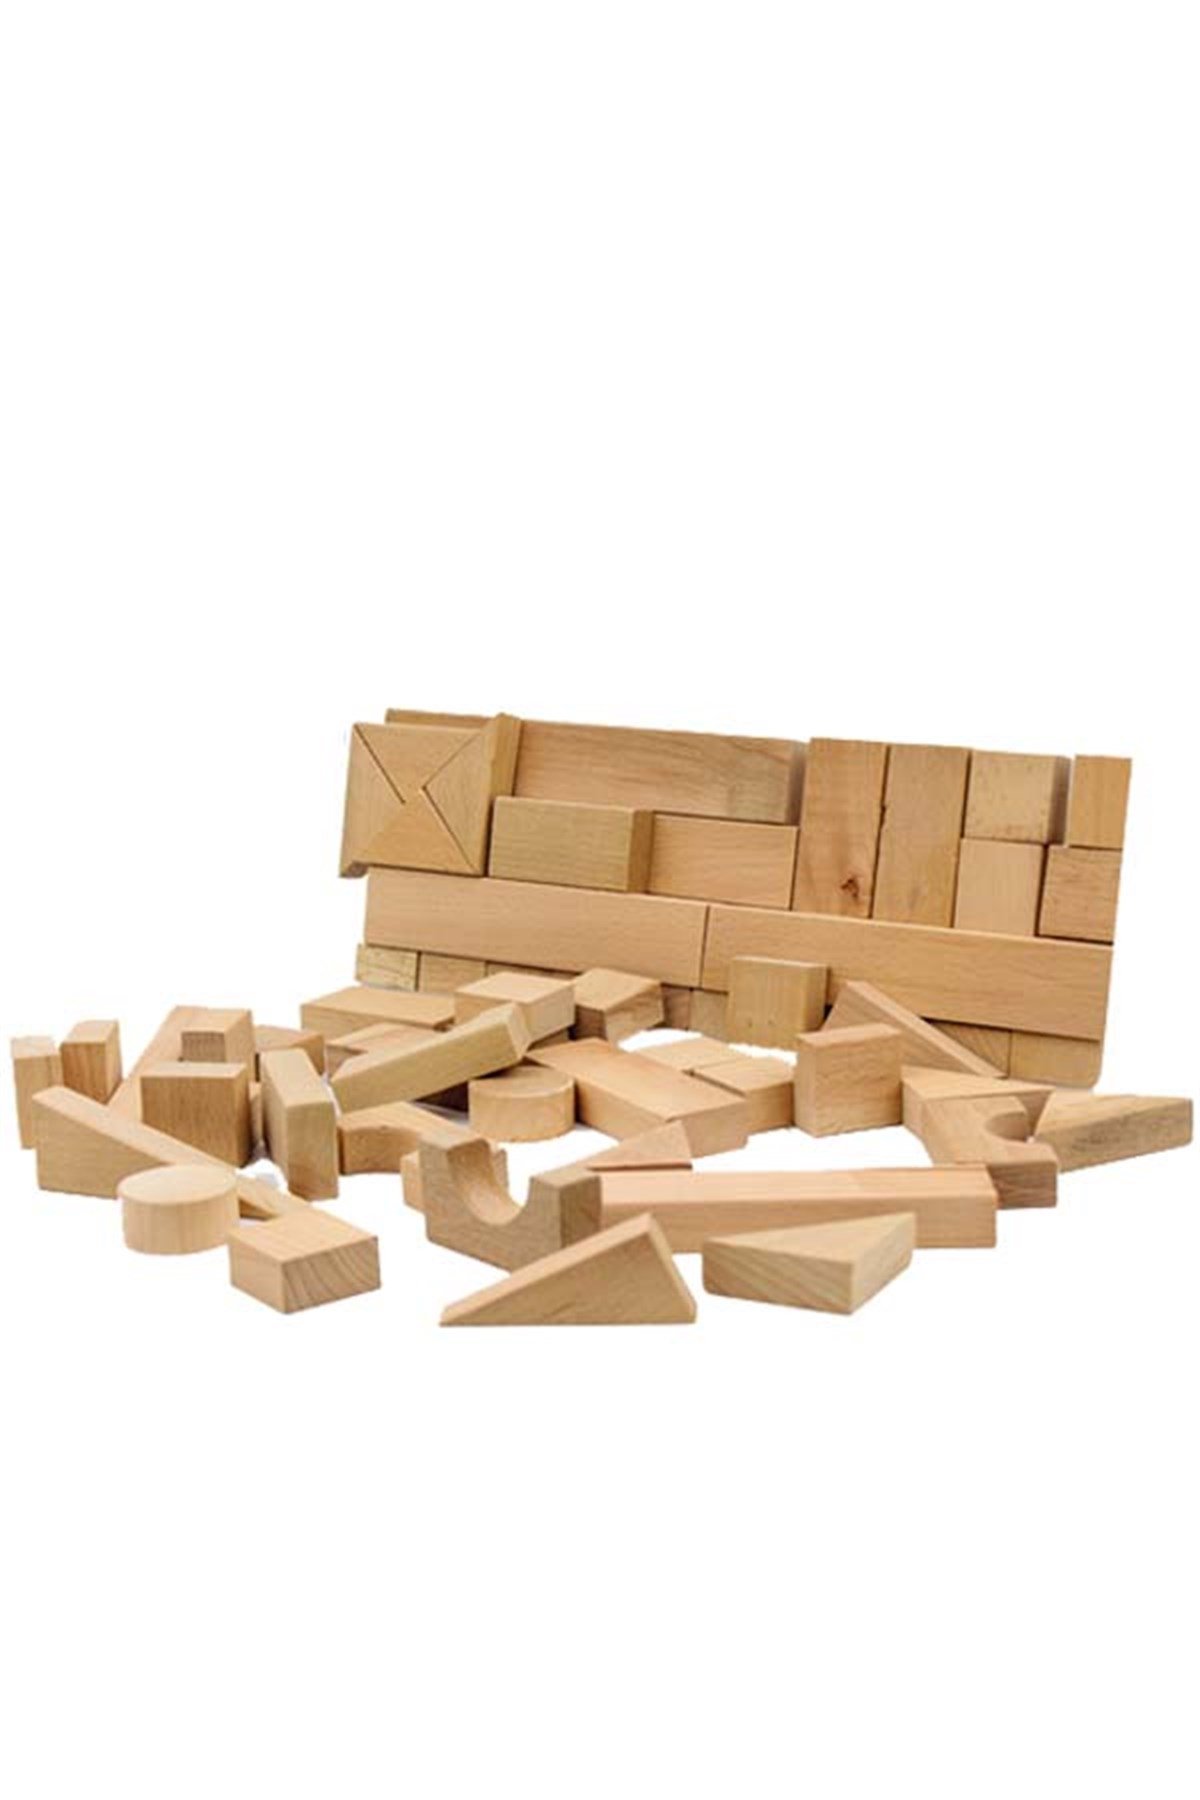 Ahşap Blok Yatay Kutu 60 Parça, Lego ve Bloklar, Montessori Materyalleri,  Ahşap Eğitici Oyuncaklar